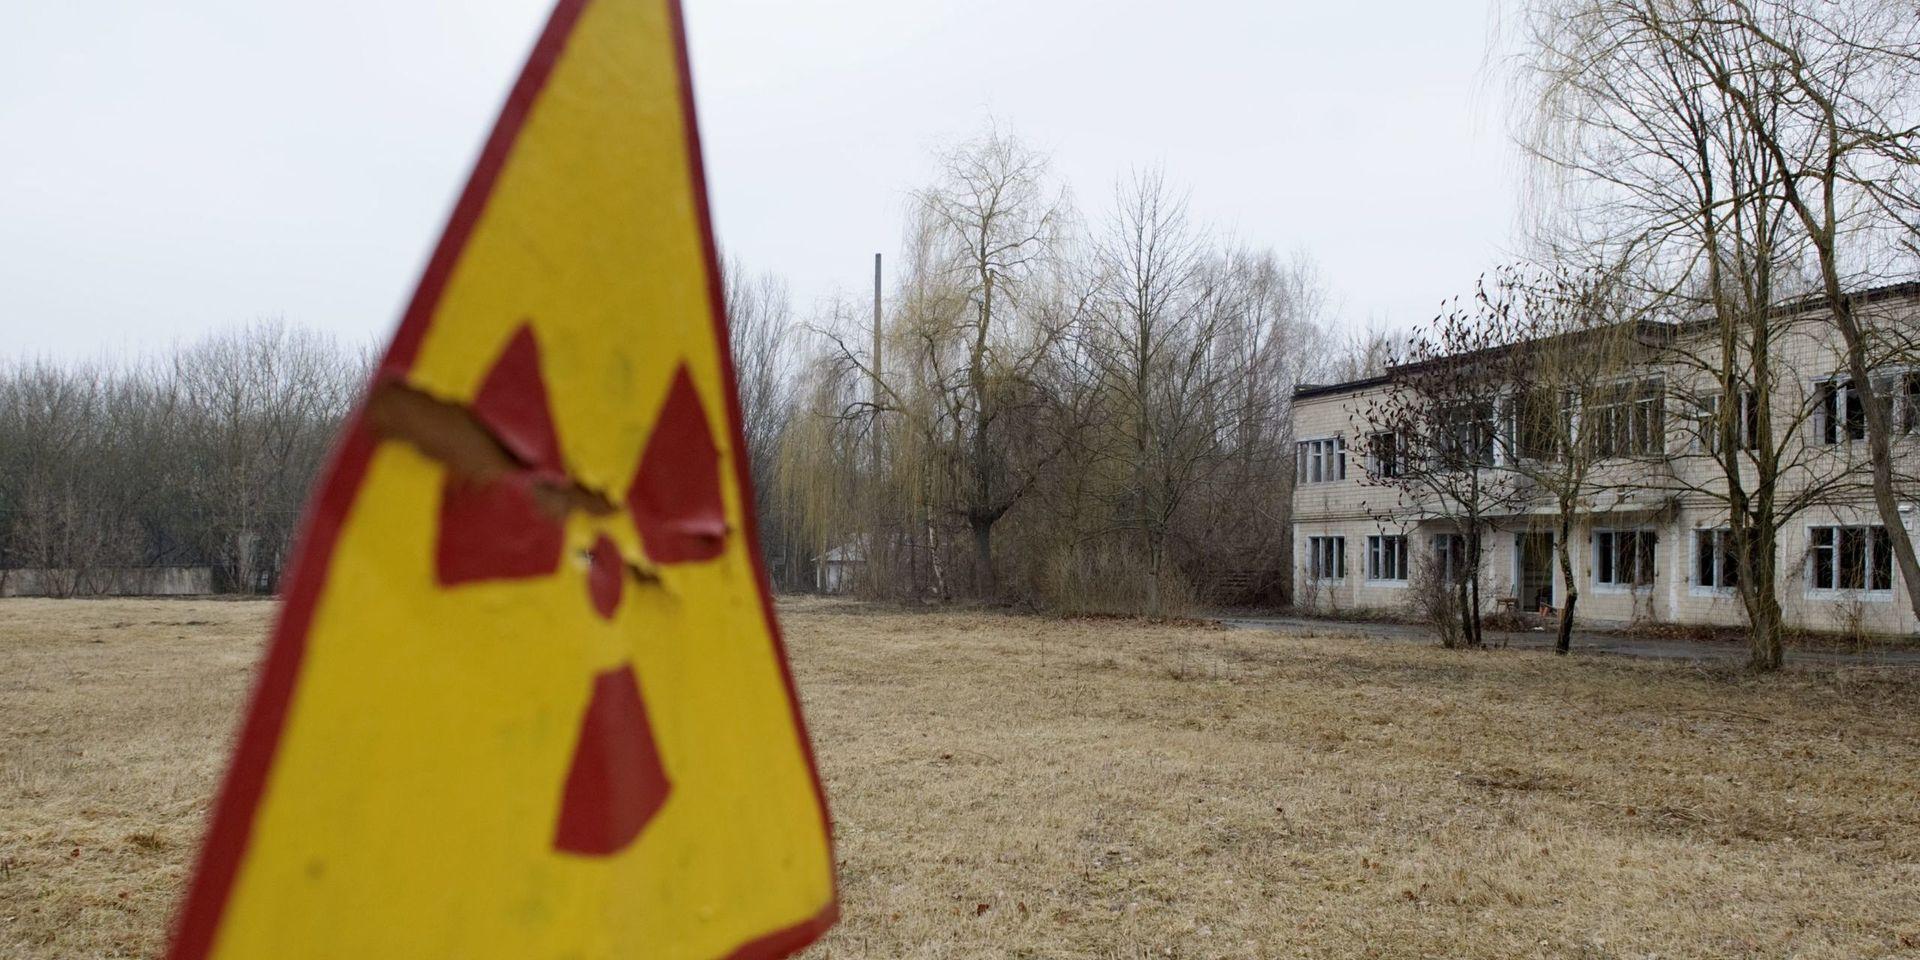 Olyckor som Tjernobyl är medräknat i siffrorna för stråldos.